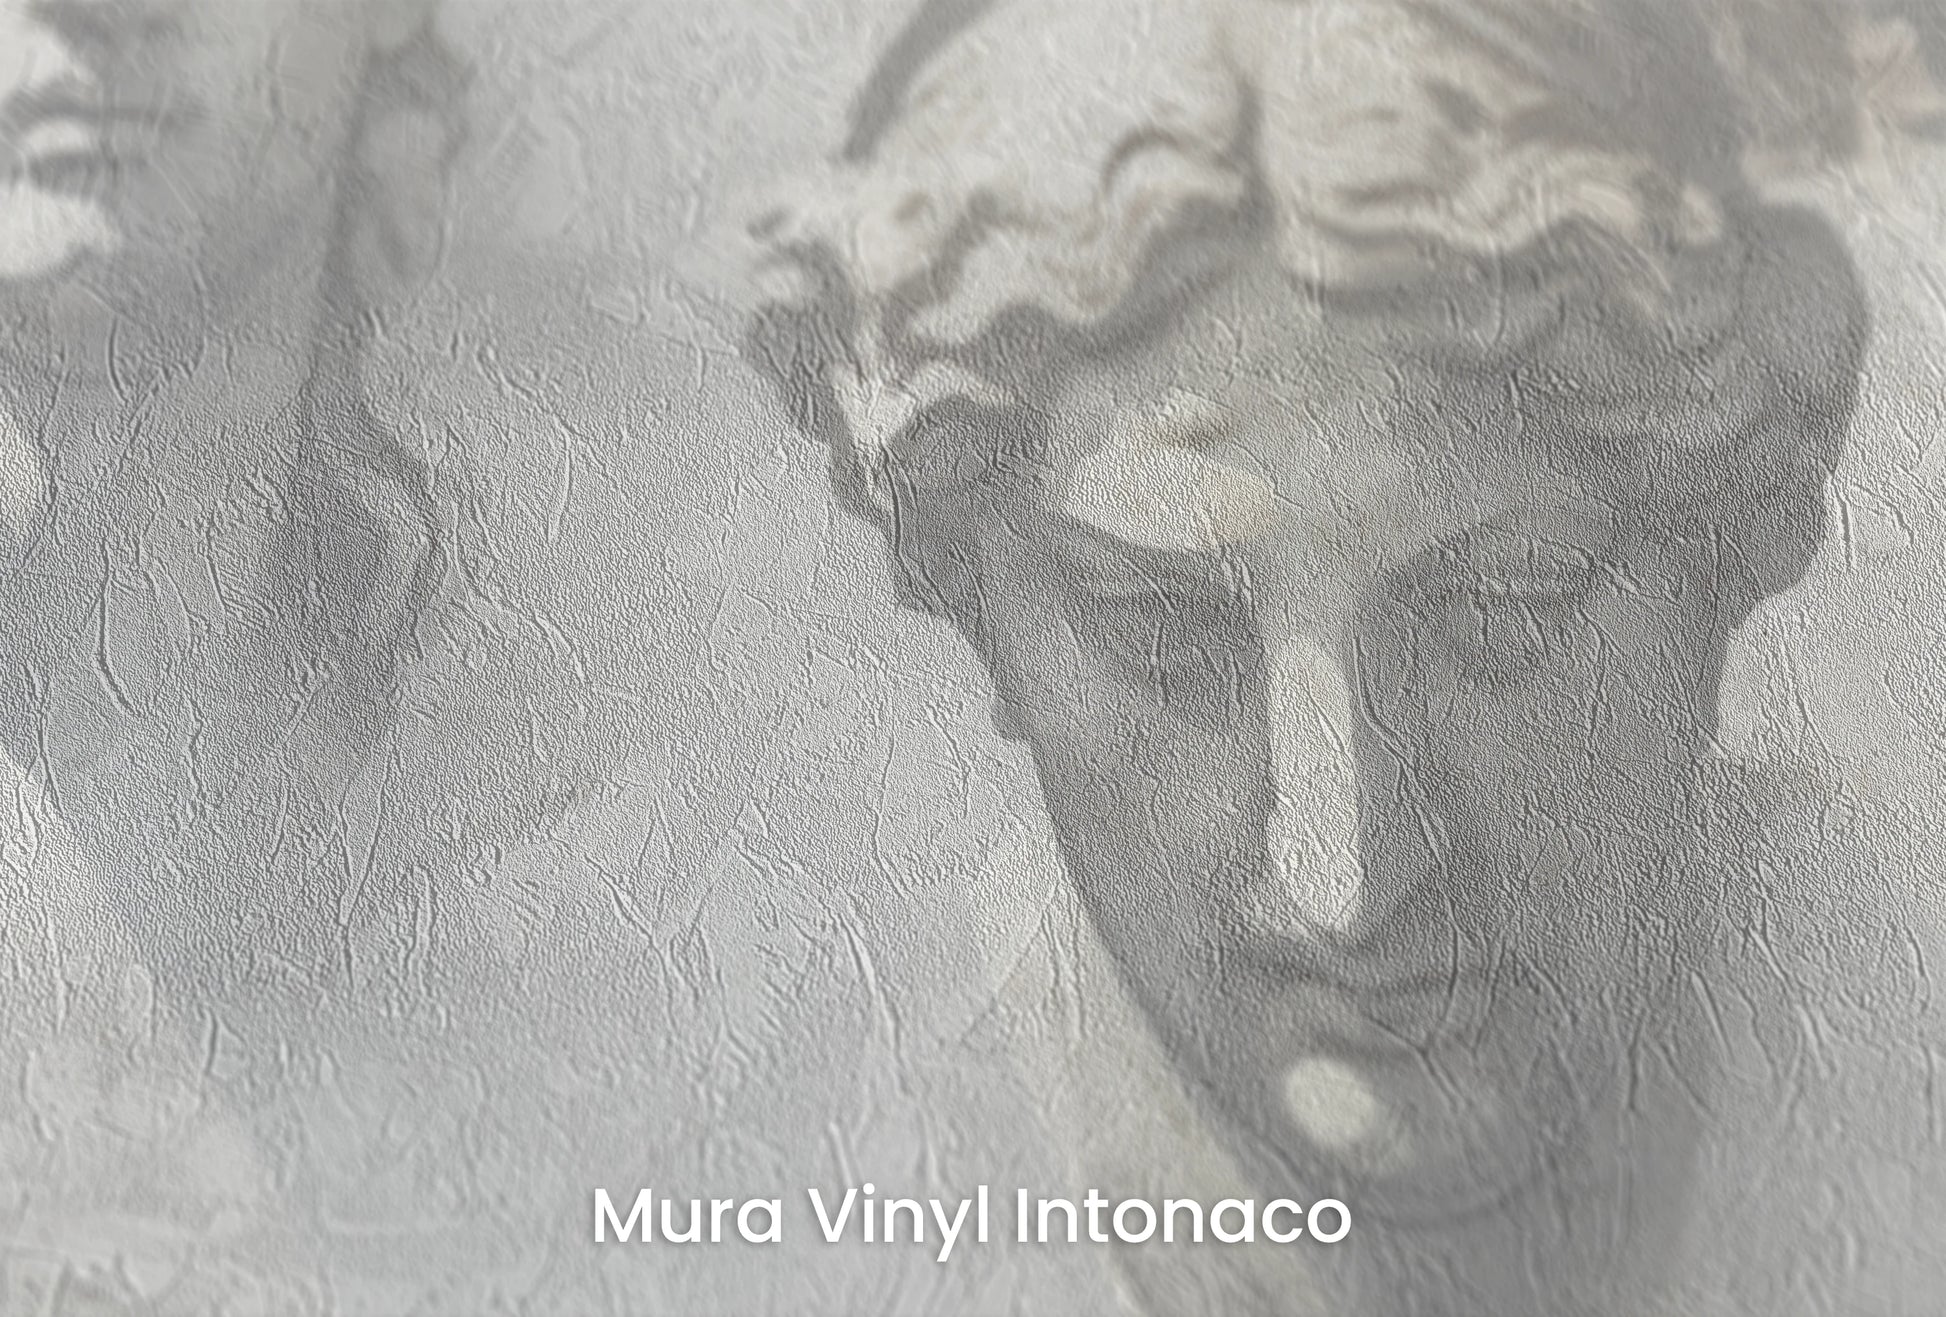 Zbliżenie na artystyczną fototapetę o nazwie The Muses' Grace na podłożu Mura Vinyl Intonaco - struktura tartego tynku.